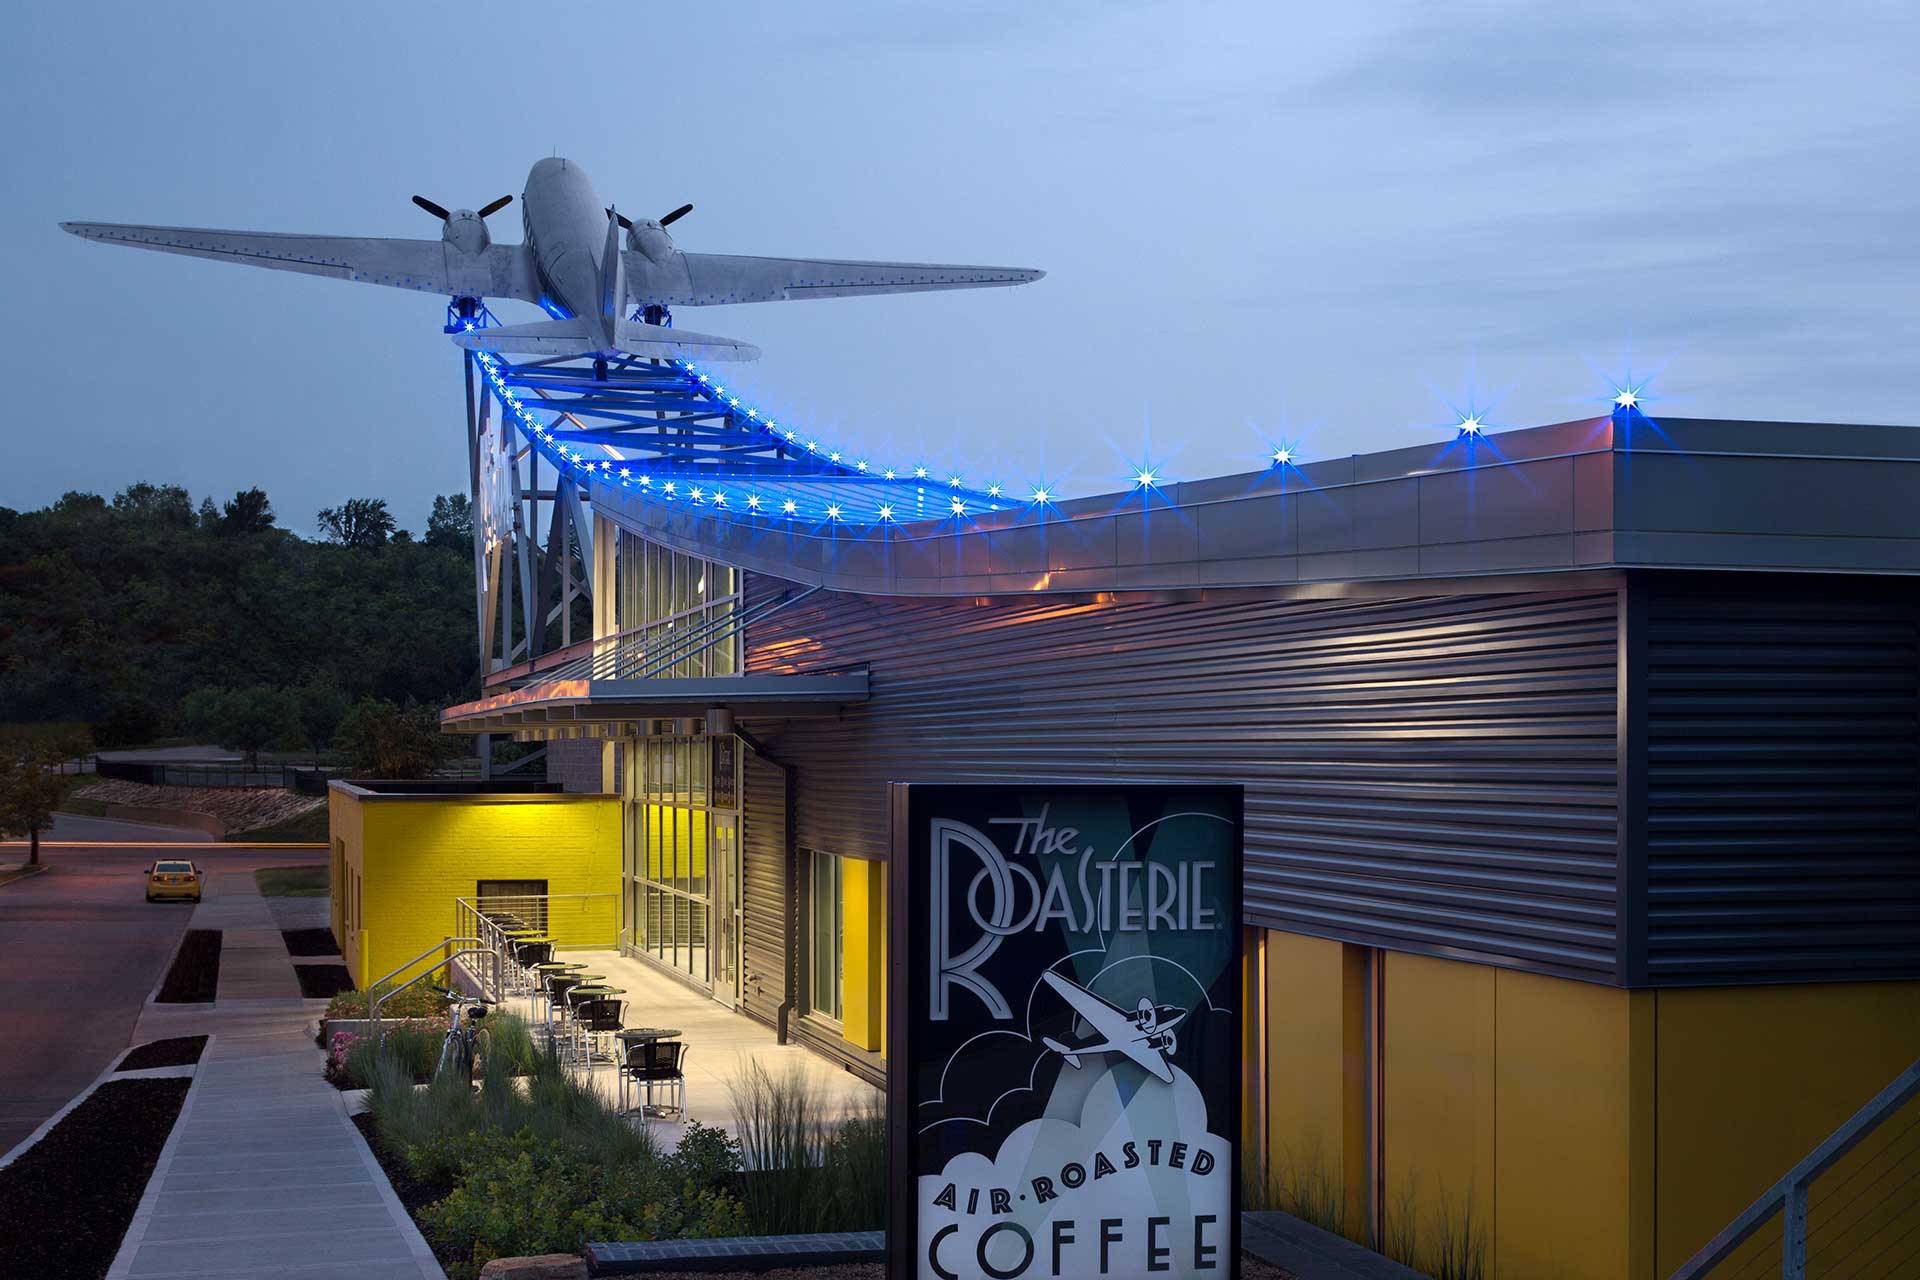 โรงงาน The Roasterie ในแคนซัสซิตี ซึ่งมีเครื่องบินใบพัดคู่ที่สร้างขึ้นเป็นส่วนหนึ่งของการออกแบบหลังคา